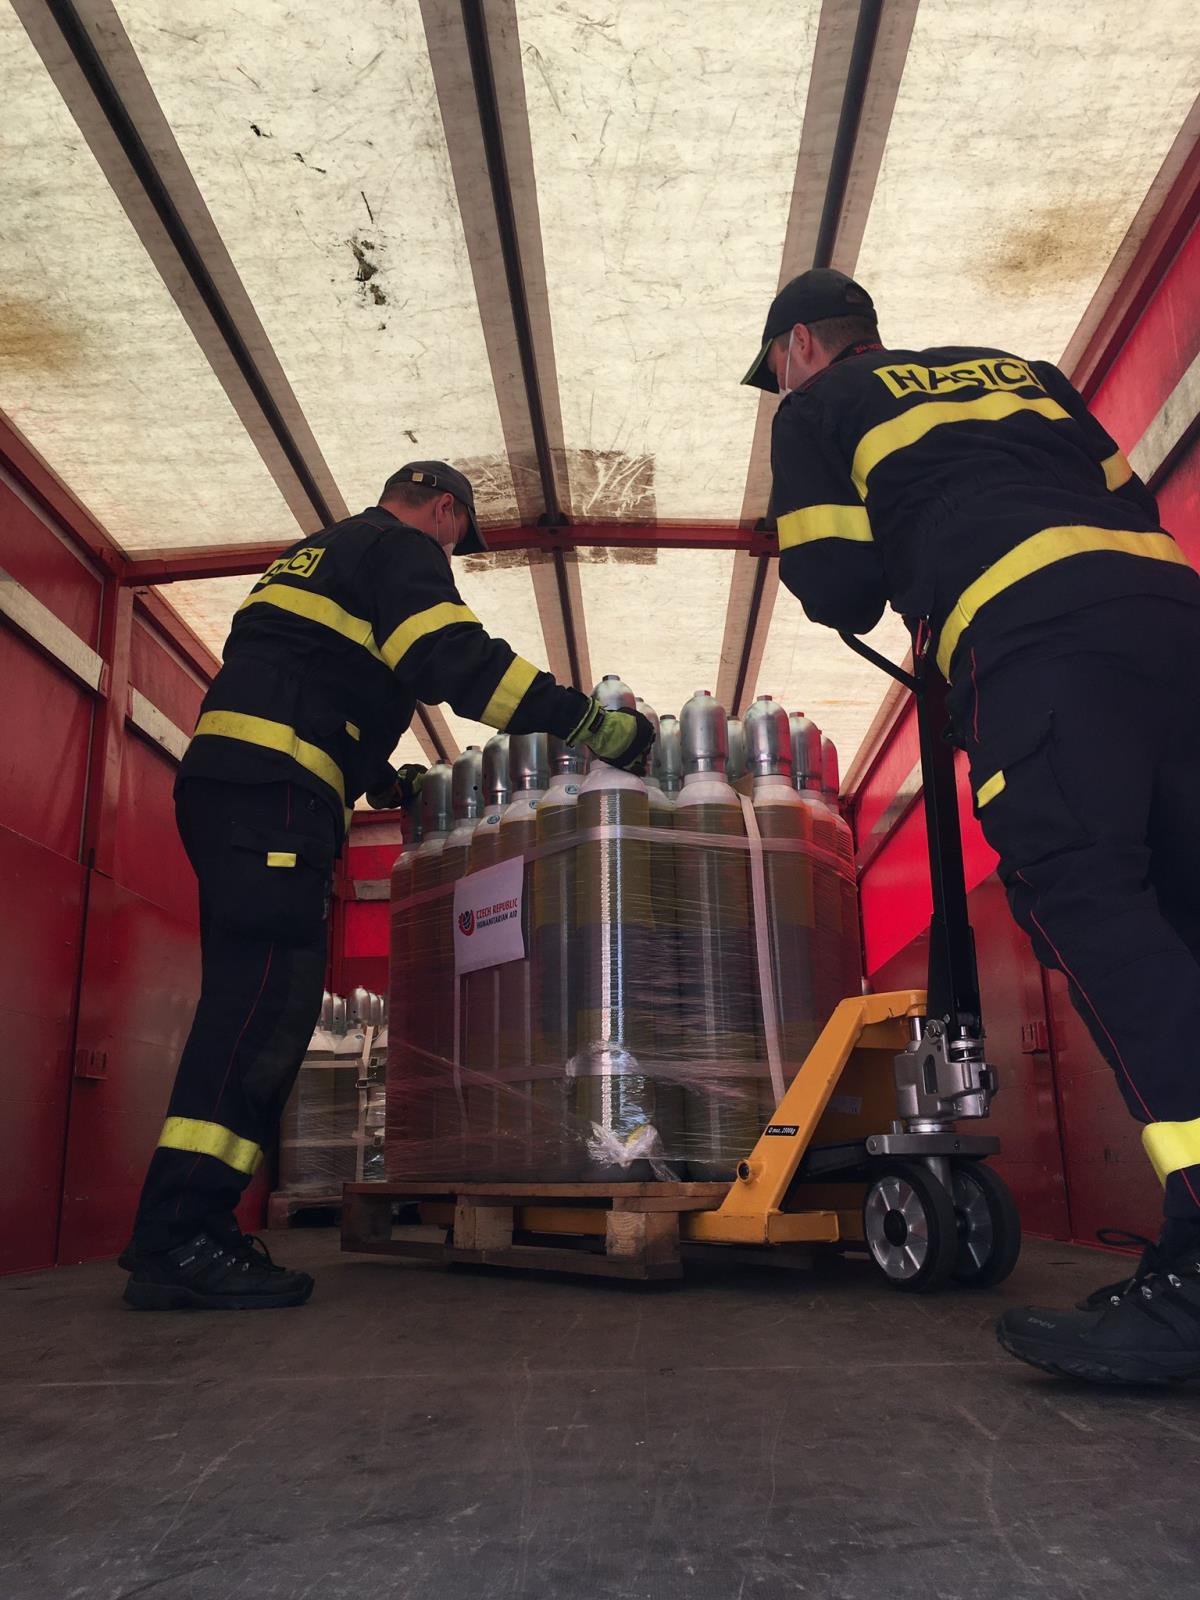 2 příslušníci HZS ČR nakládají nádoby s kyslíkem do nákladního vozu.JPG